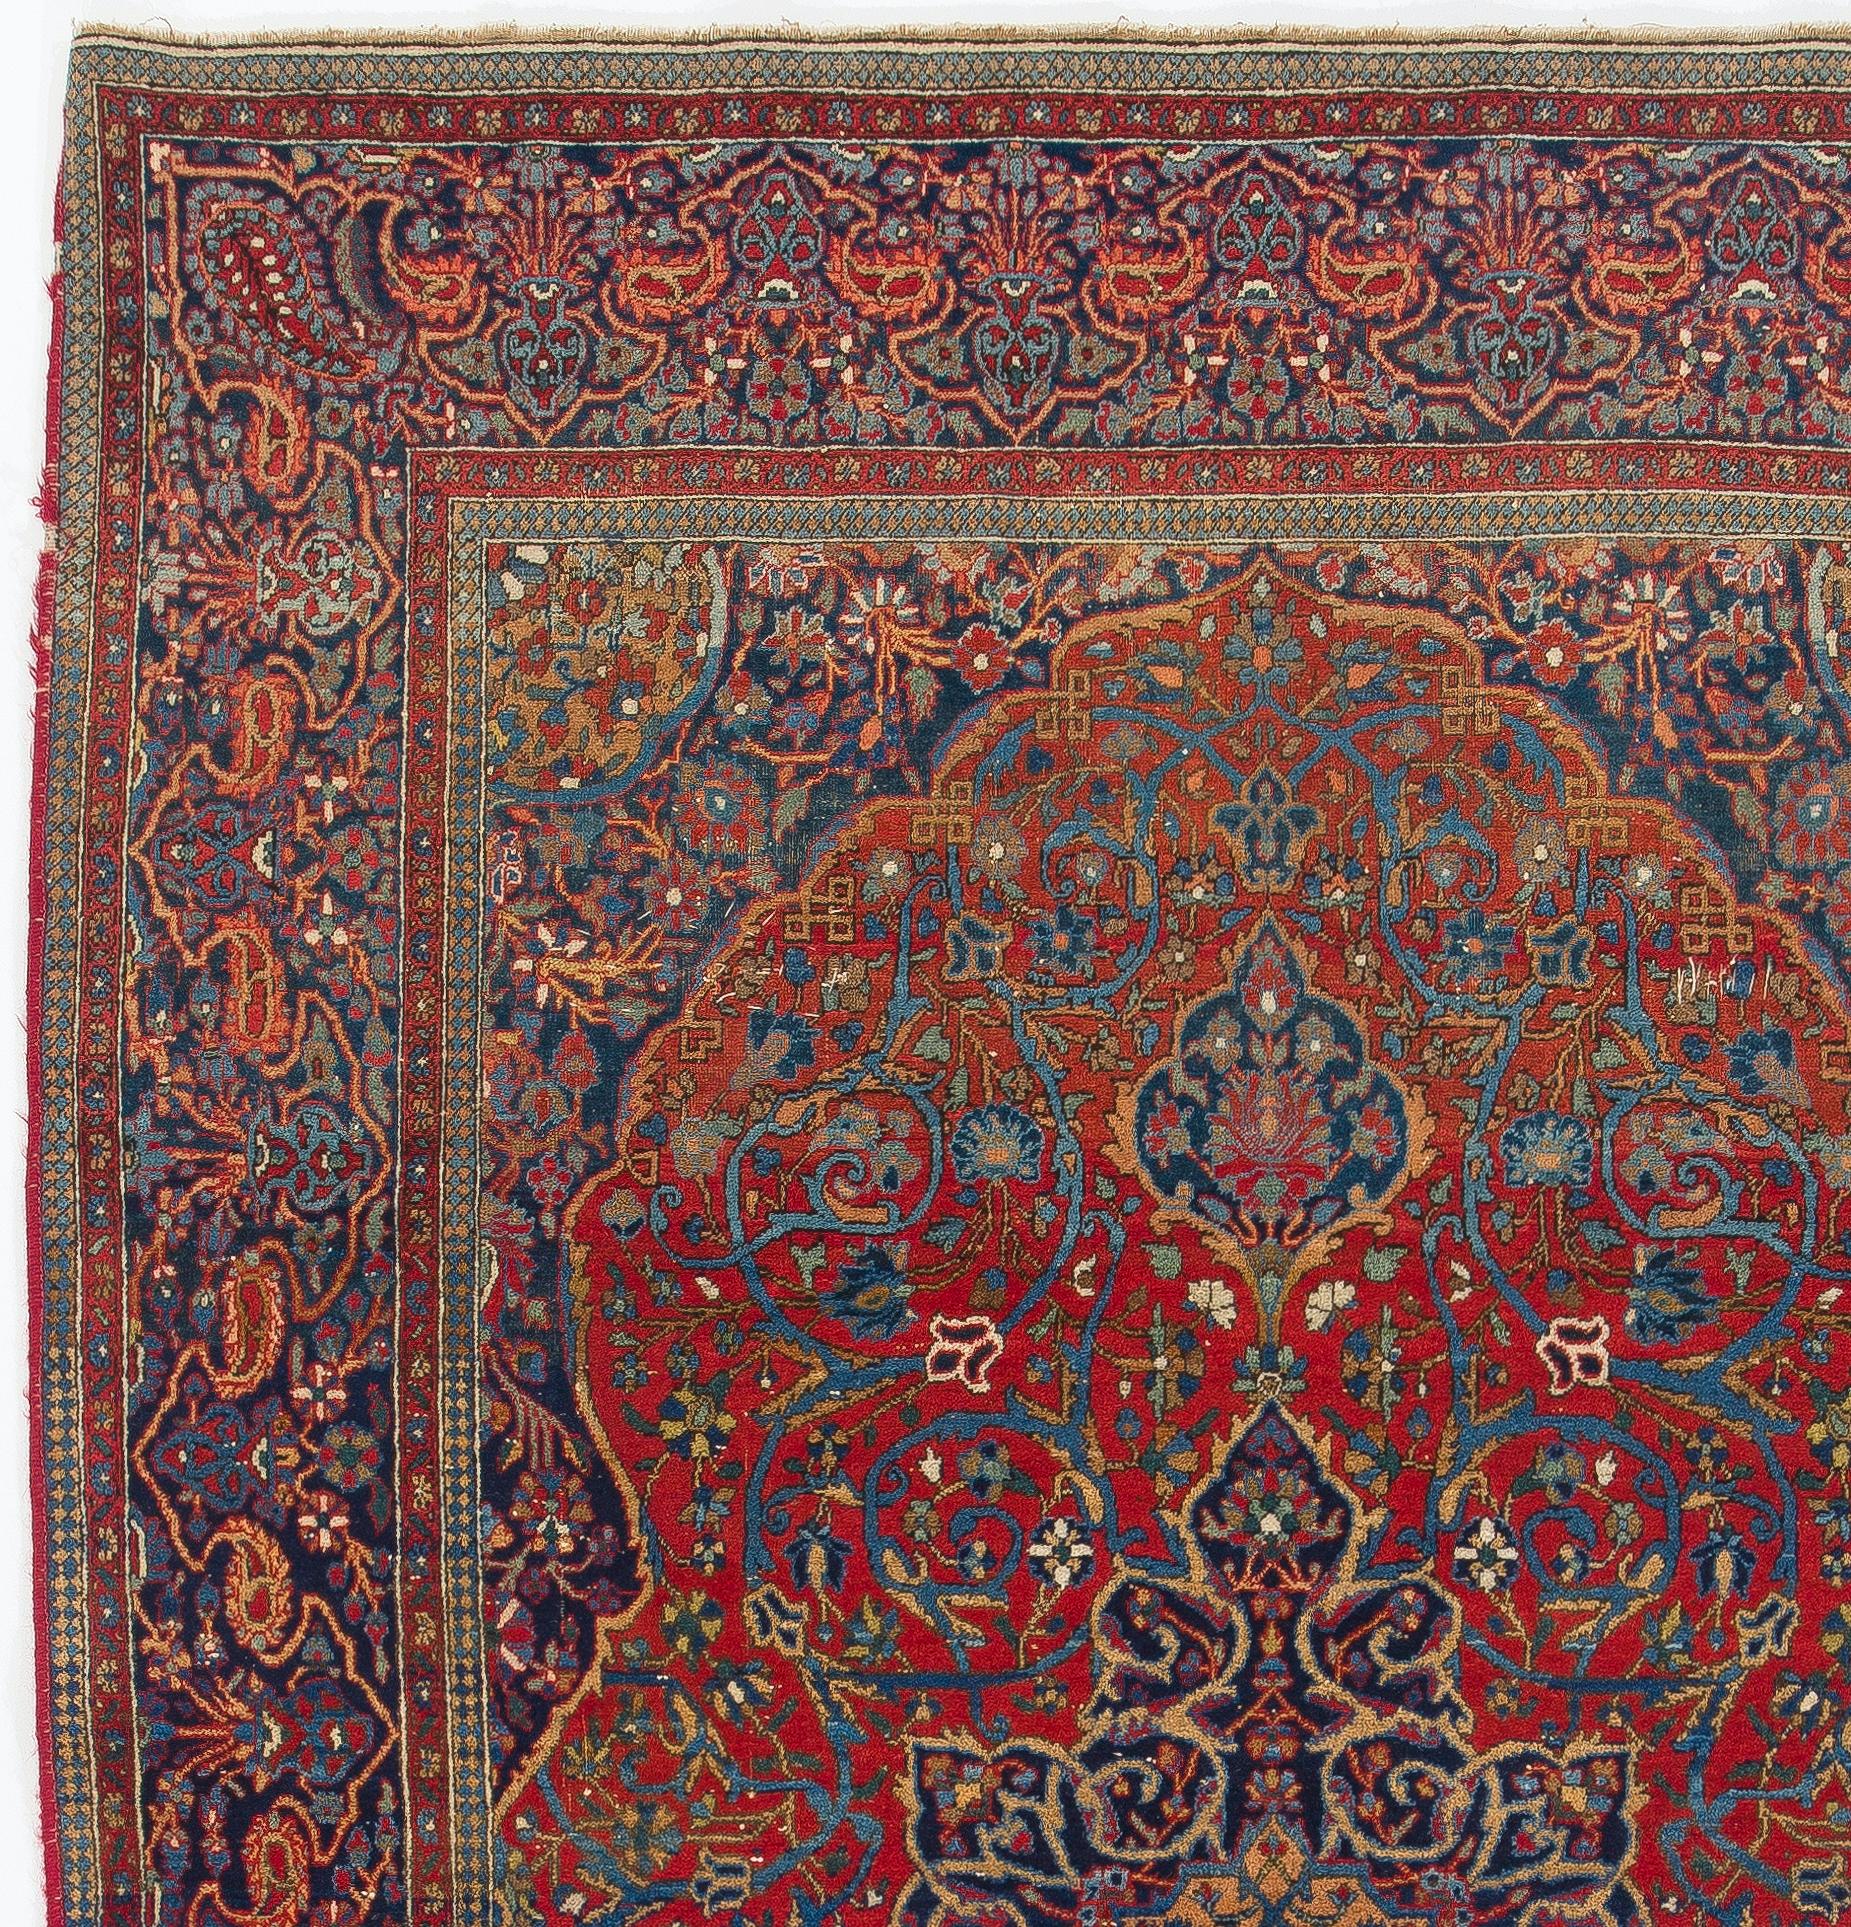 Feiner antiker persischer Kashan-Teppich.
Fein handgeknüpft mit gleichmäßigem, mittelhohem Wollflor auf Wollbasis. Sehr guter Zustand. Robust und sowohl für Wohn- als auch für Geschäftsräume geeignet. Professionell gewaschen. 
Größe: 4'4'' x 7'.